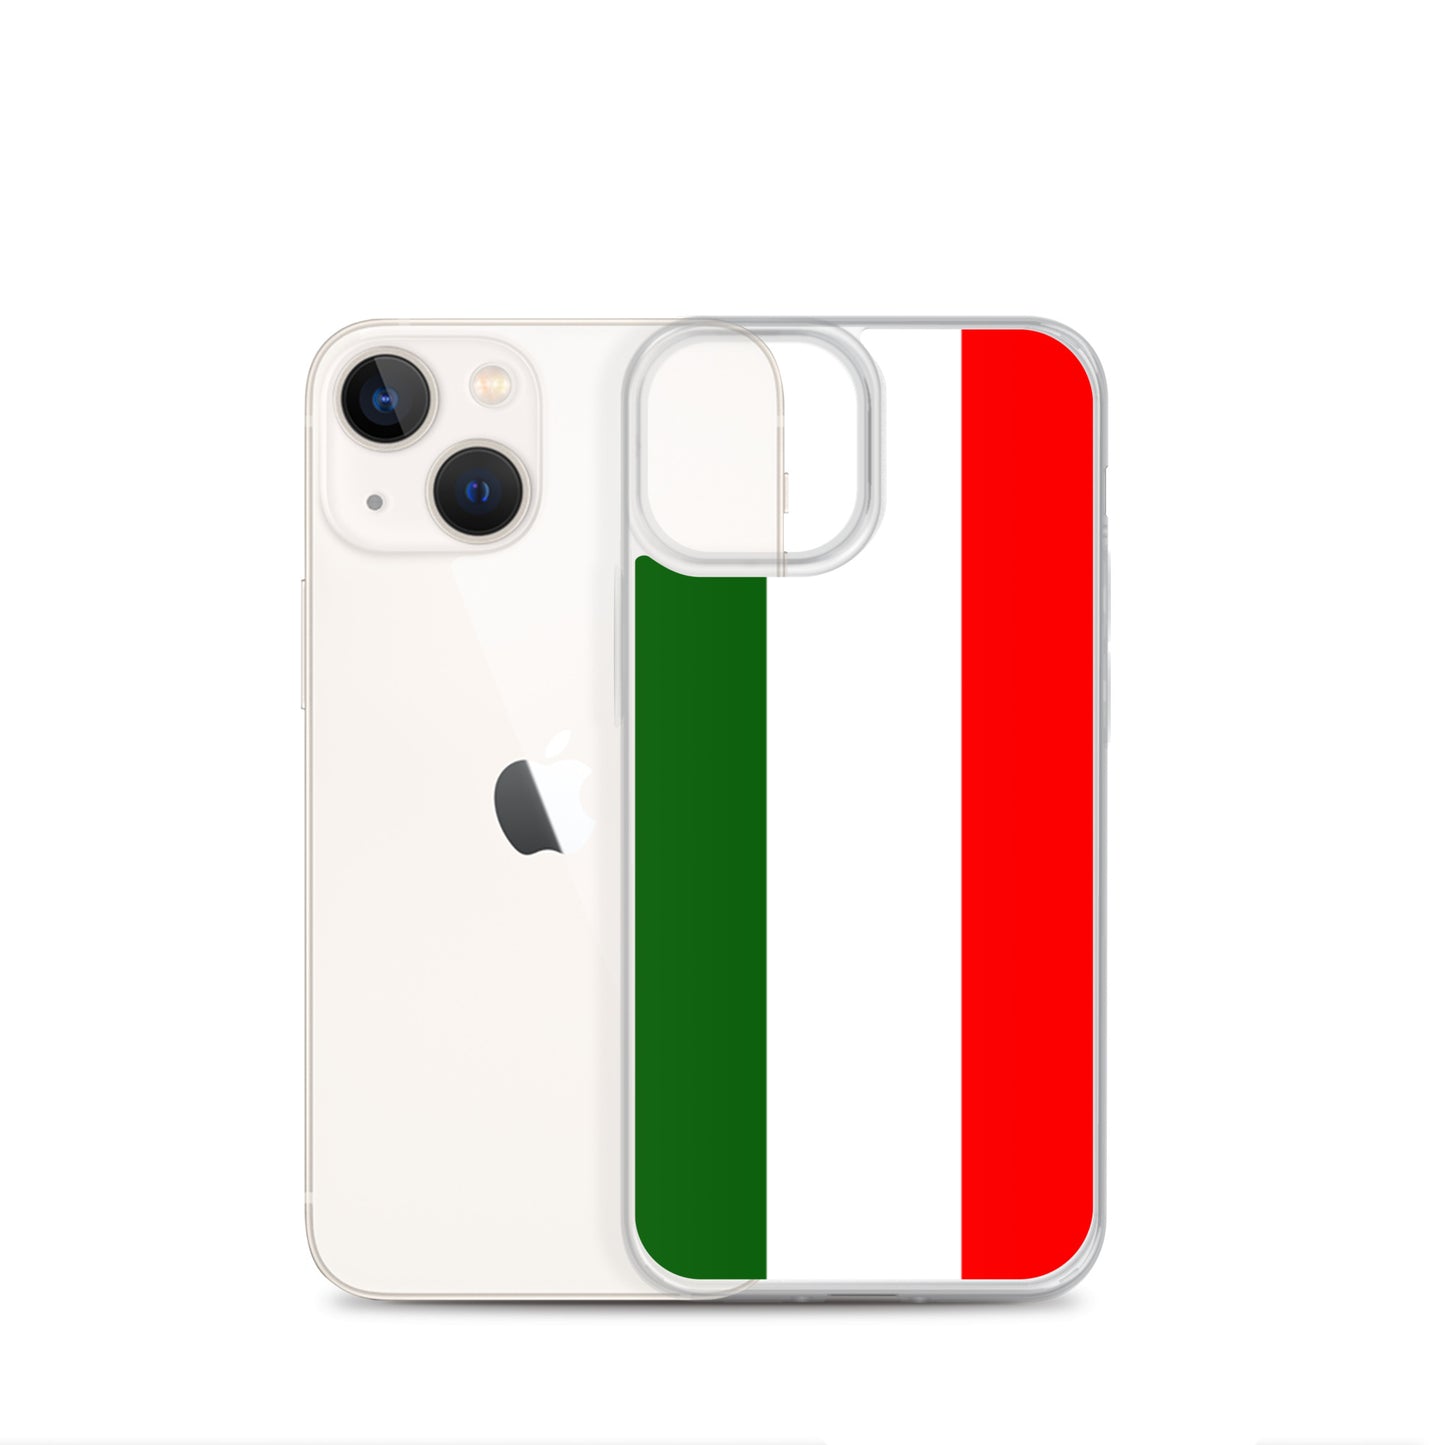 Flag Of Italy - Bandiera d'Italia iPhone Case